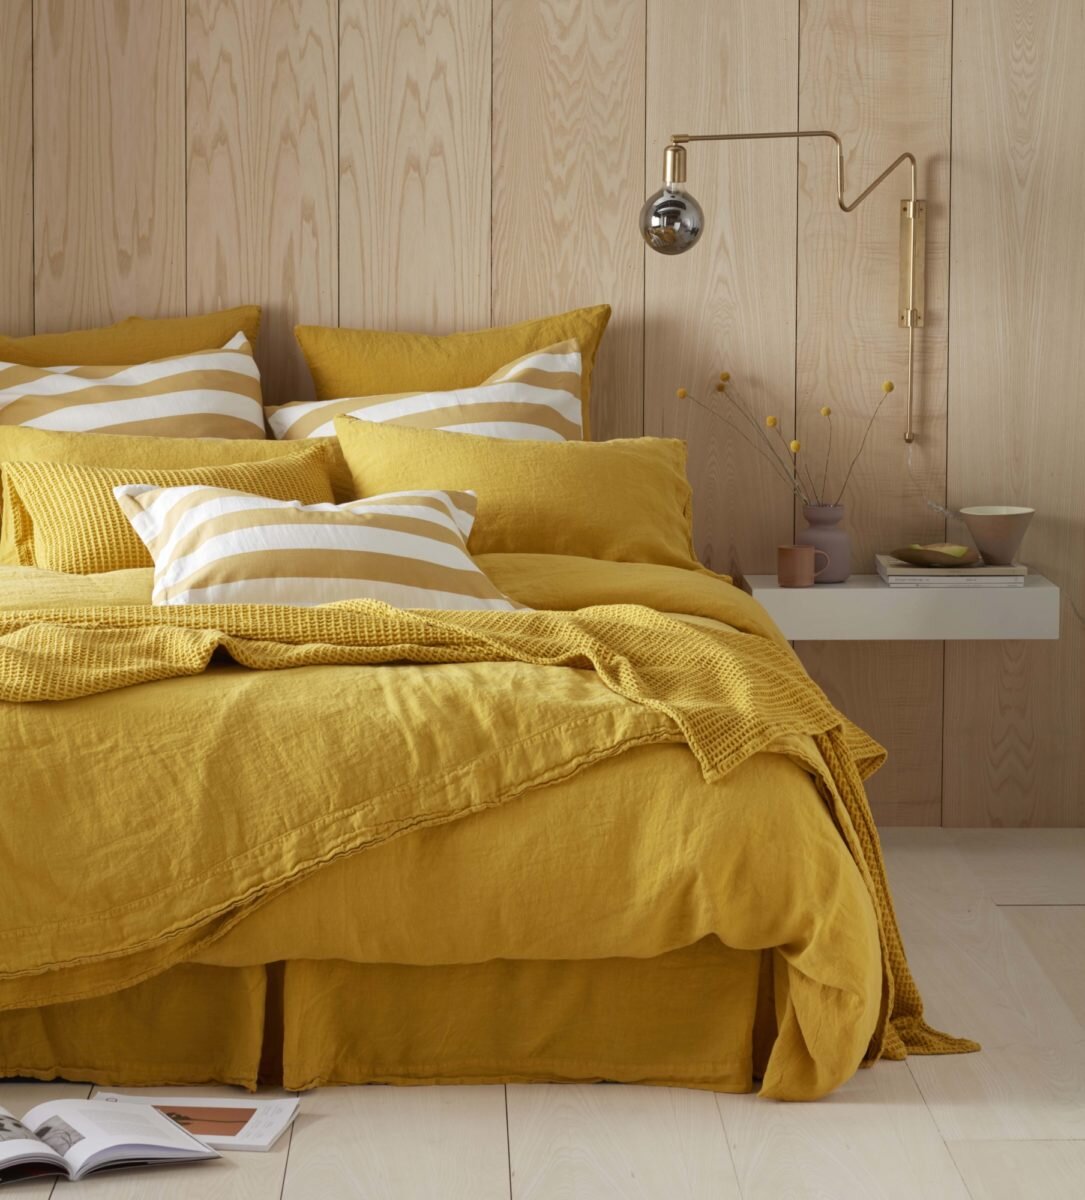 Mustard bed3.jpg